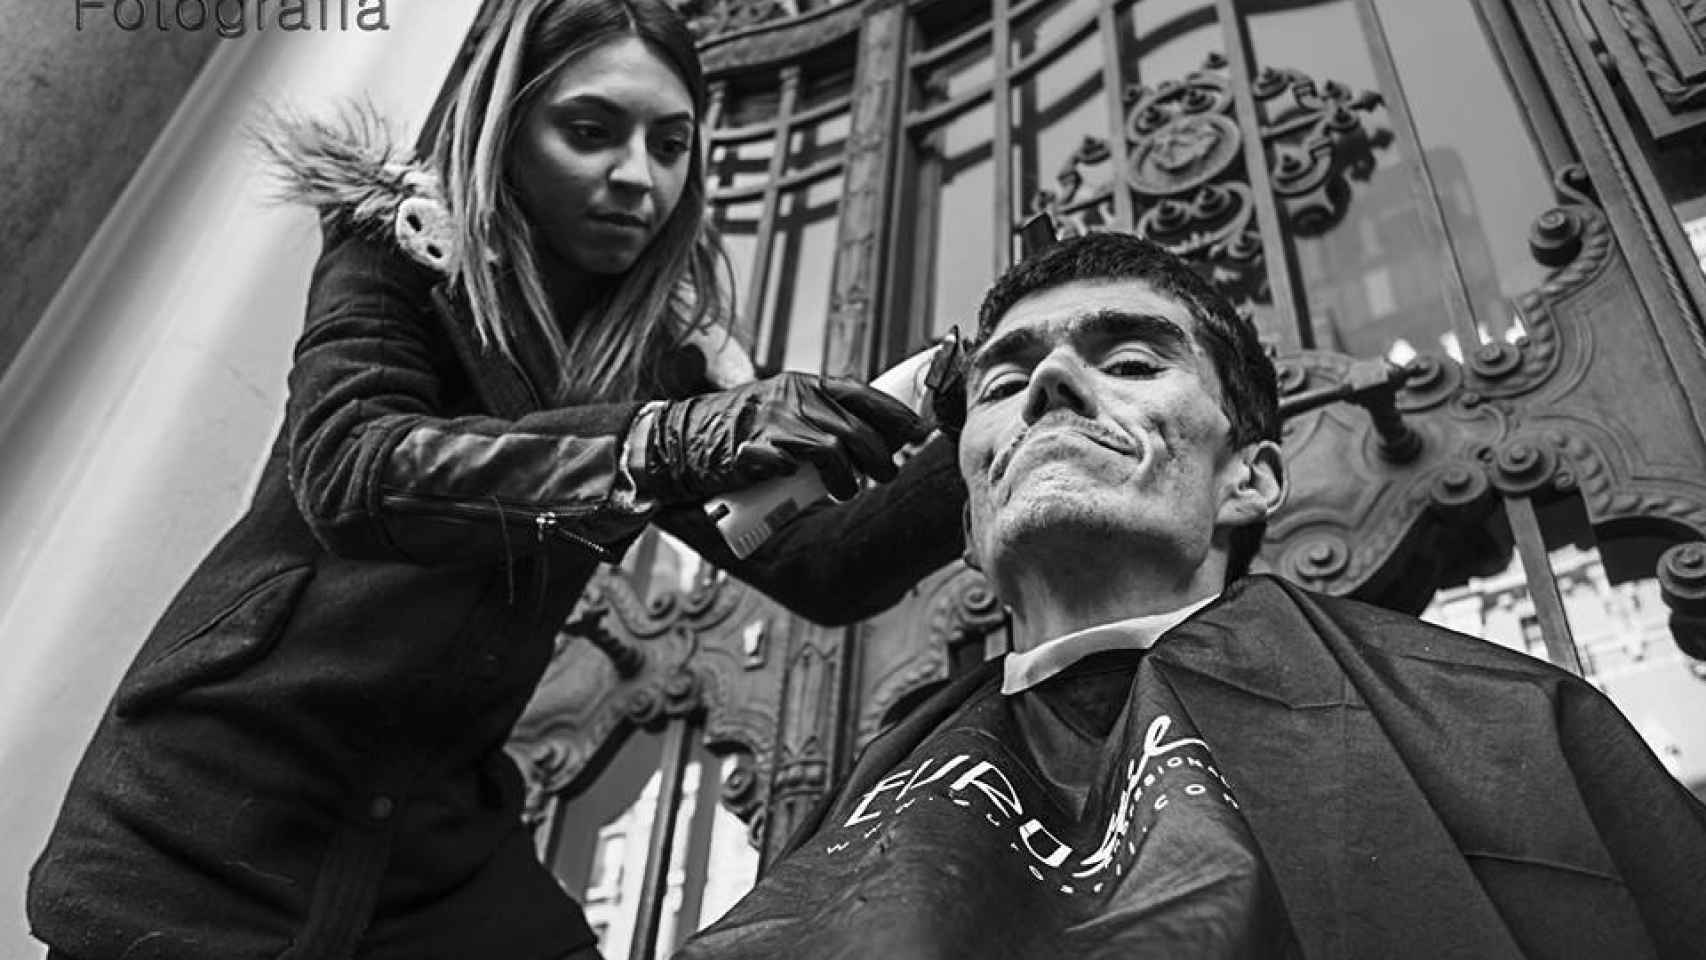 Ana Cuenca corta el pelo a Antonio en la Plaza de Ópera